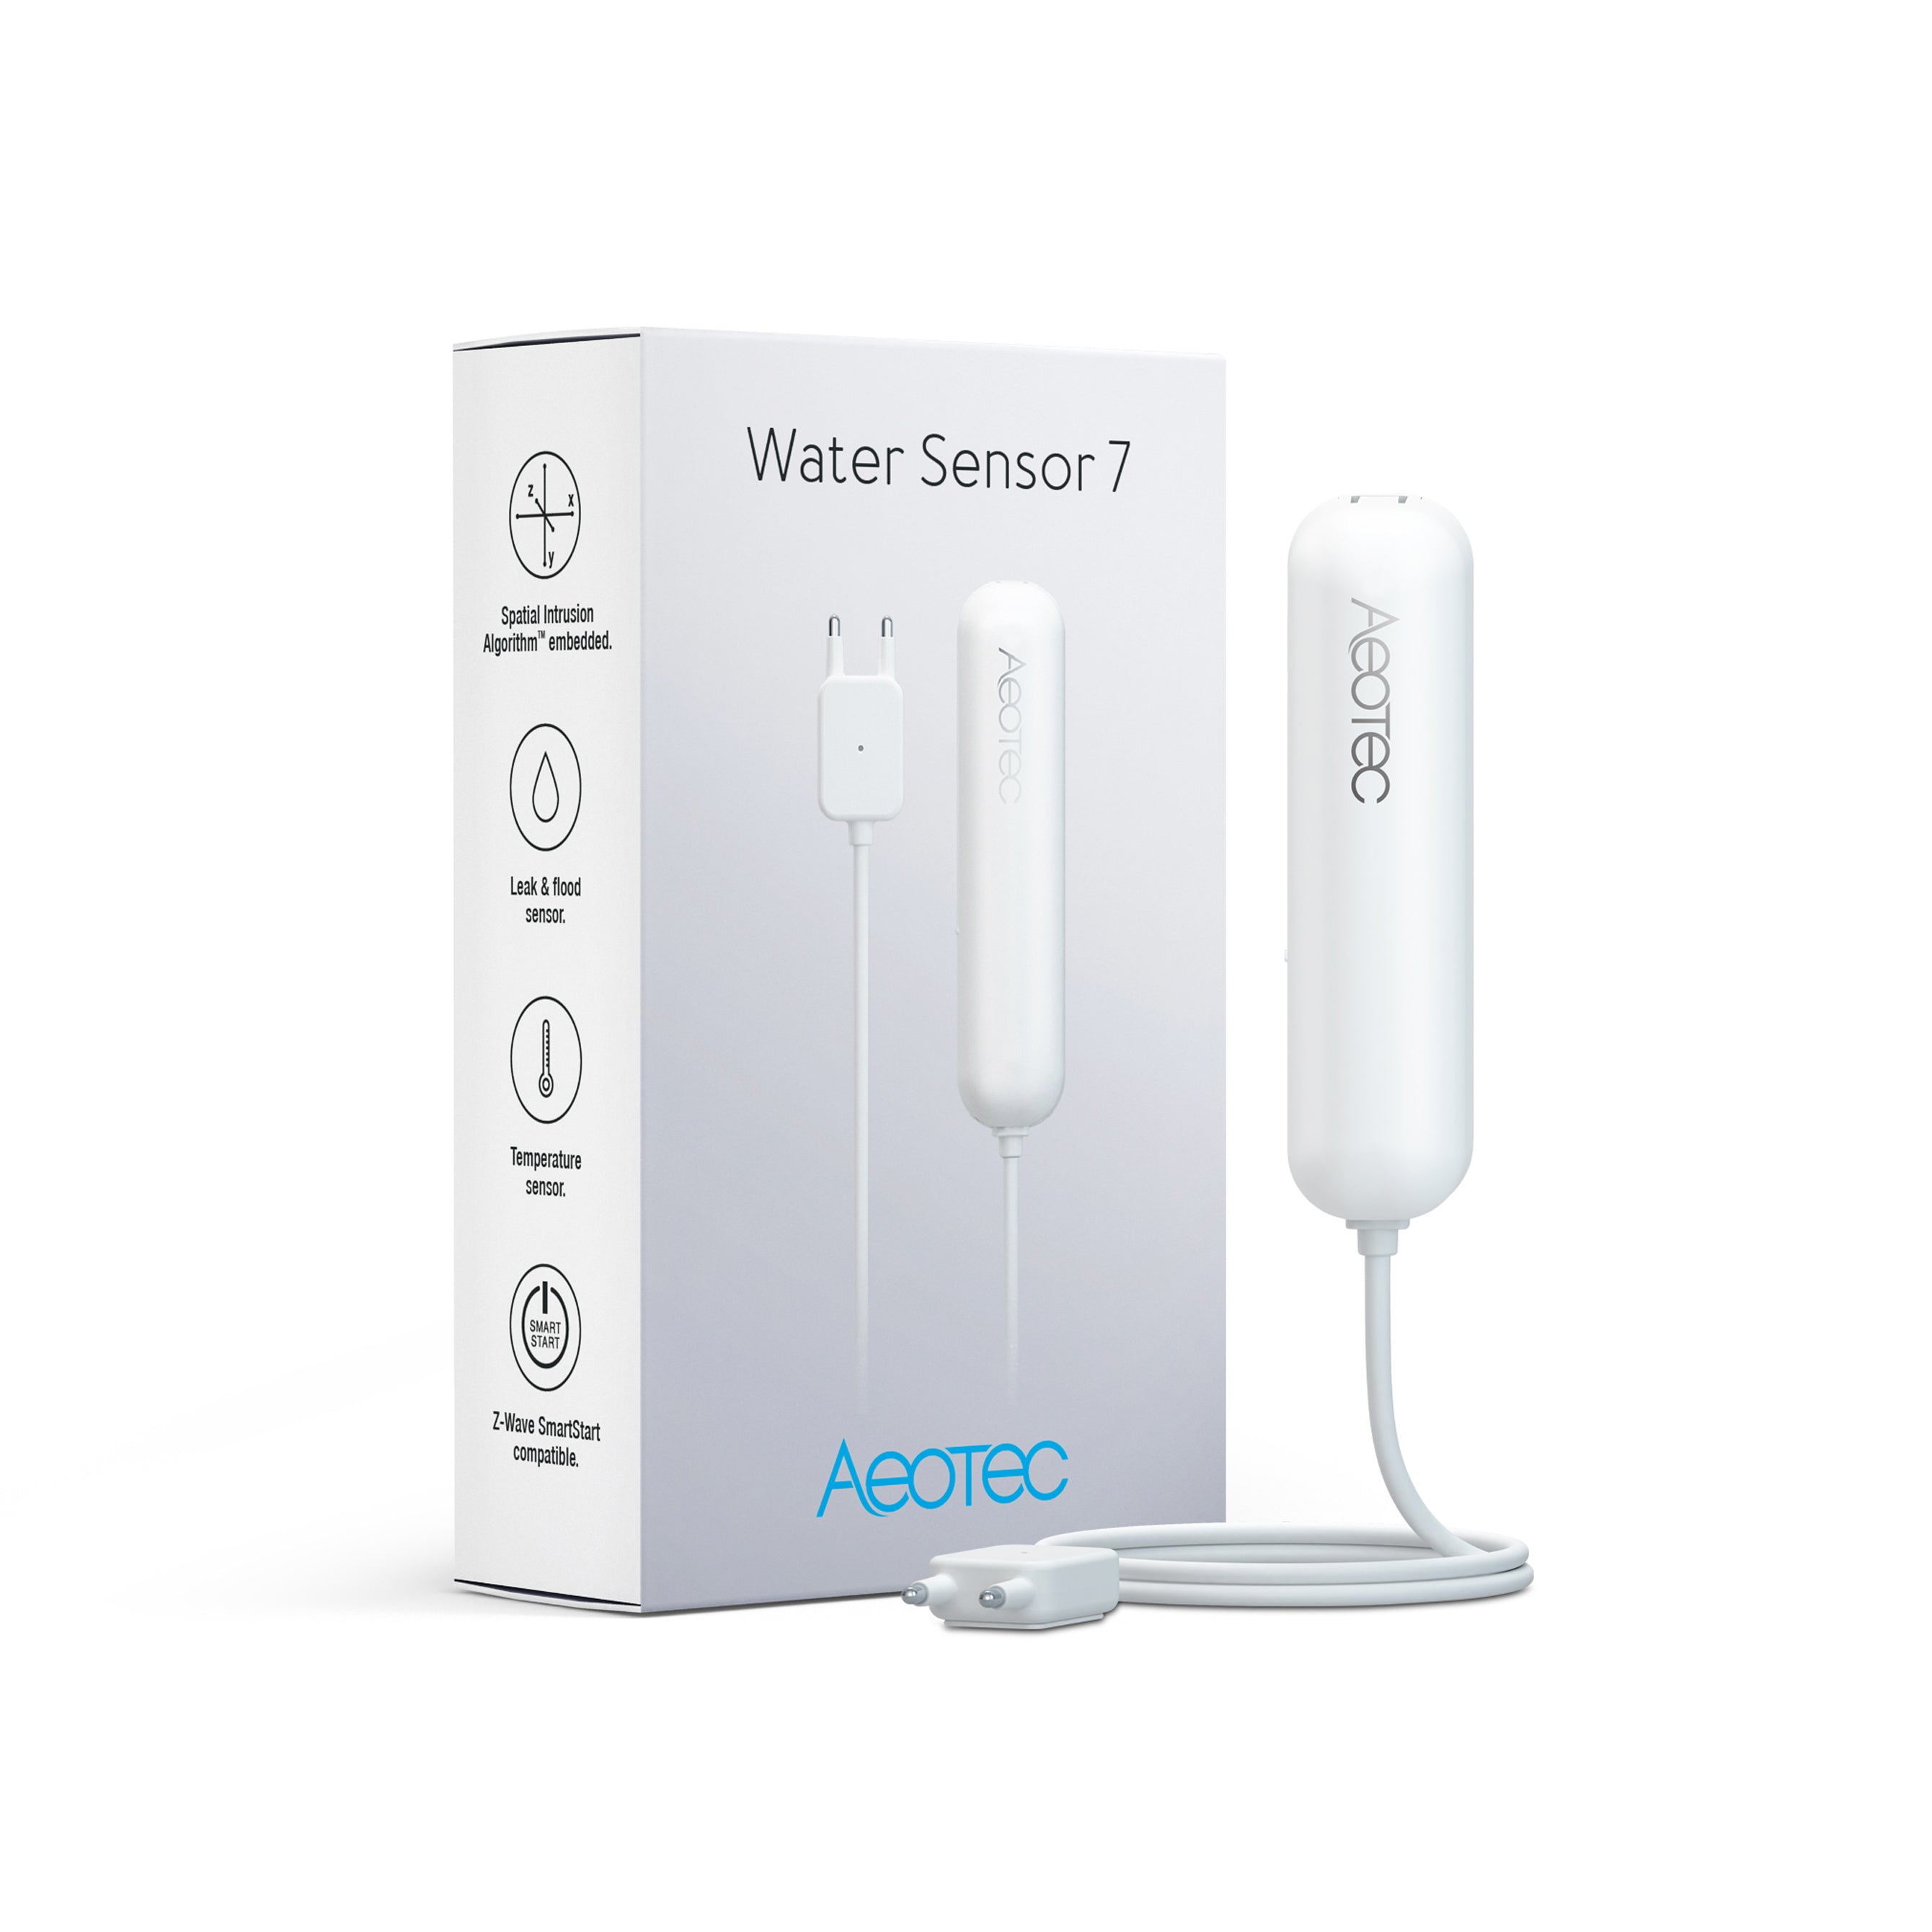 Water Sensor 7